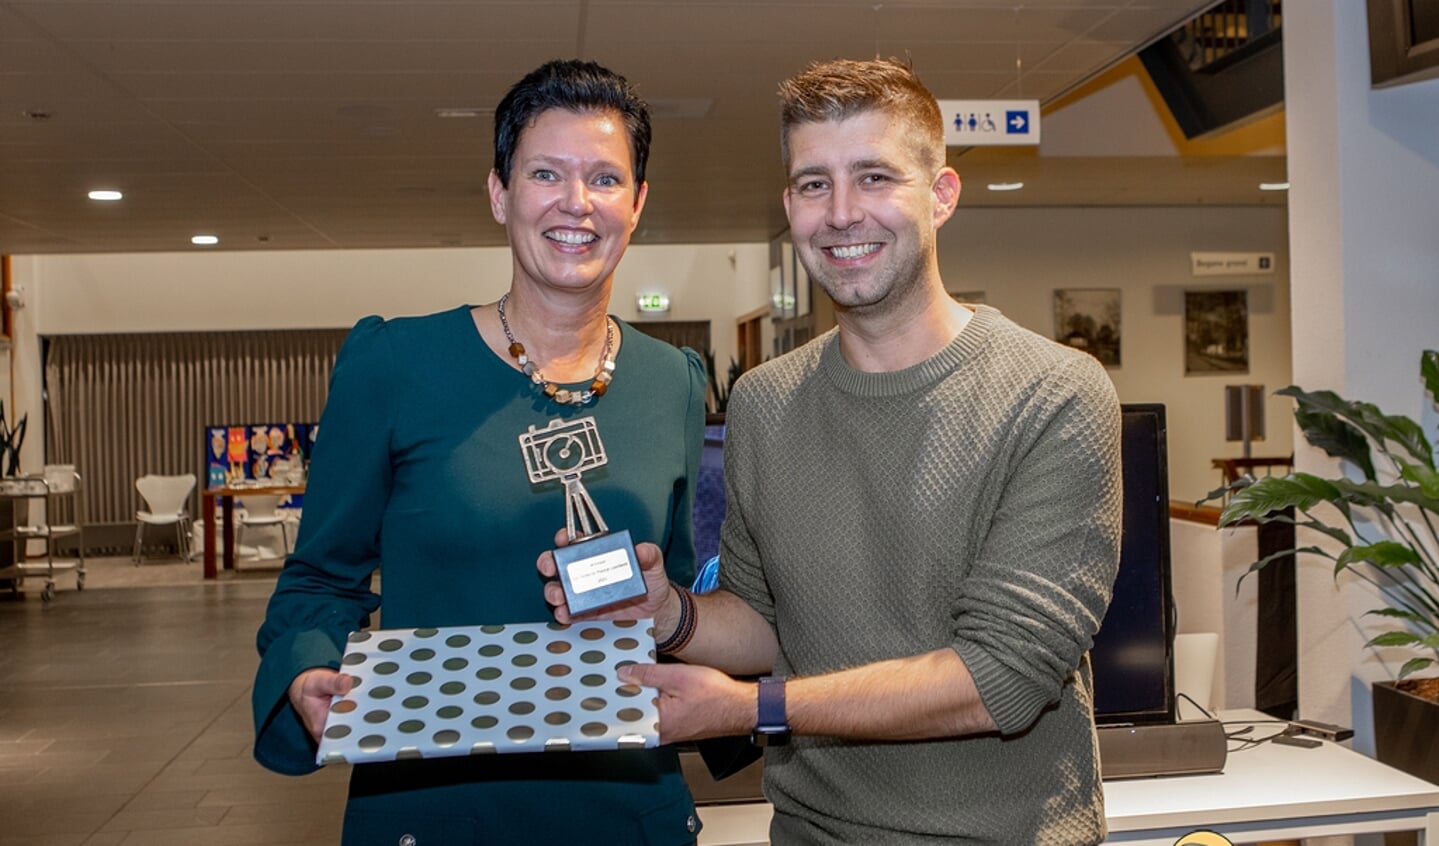 Wethouder Monika Slaets reikt de prijs uit aan de winnaar, Rob van Kaathoven